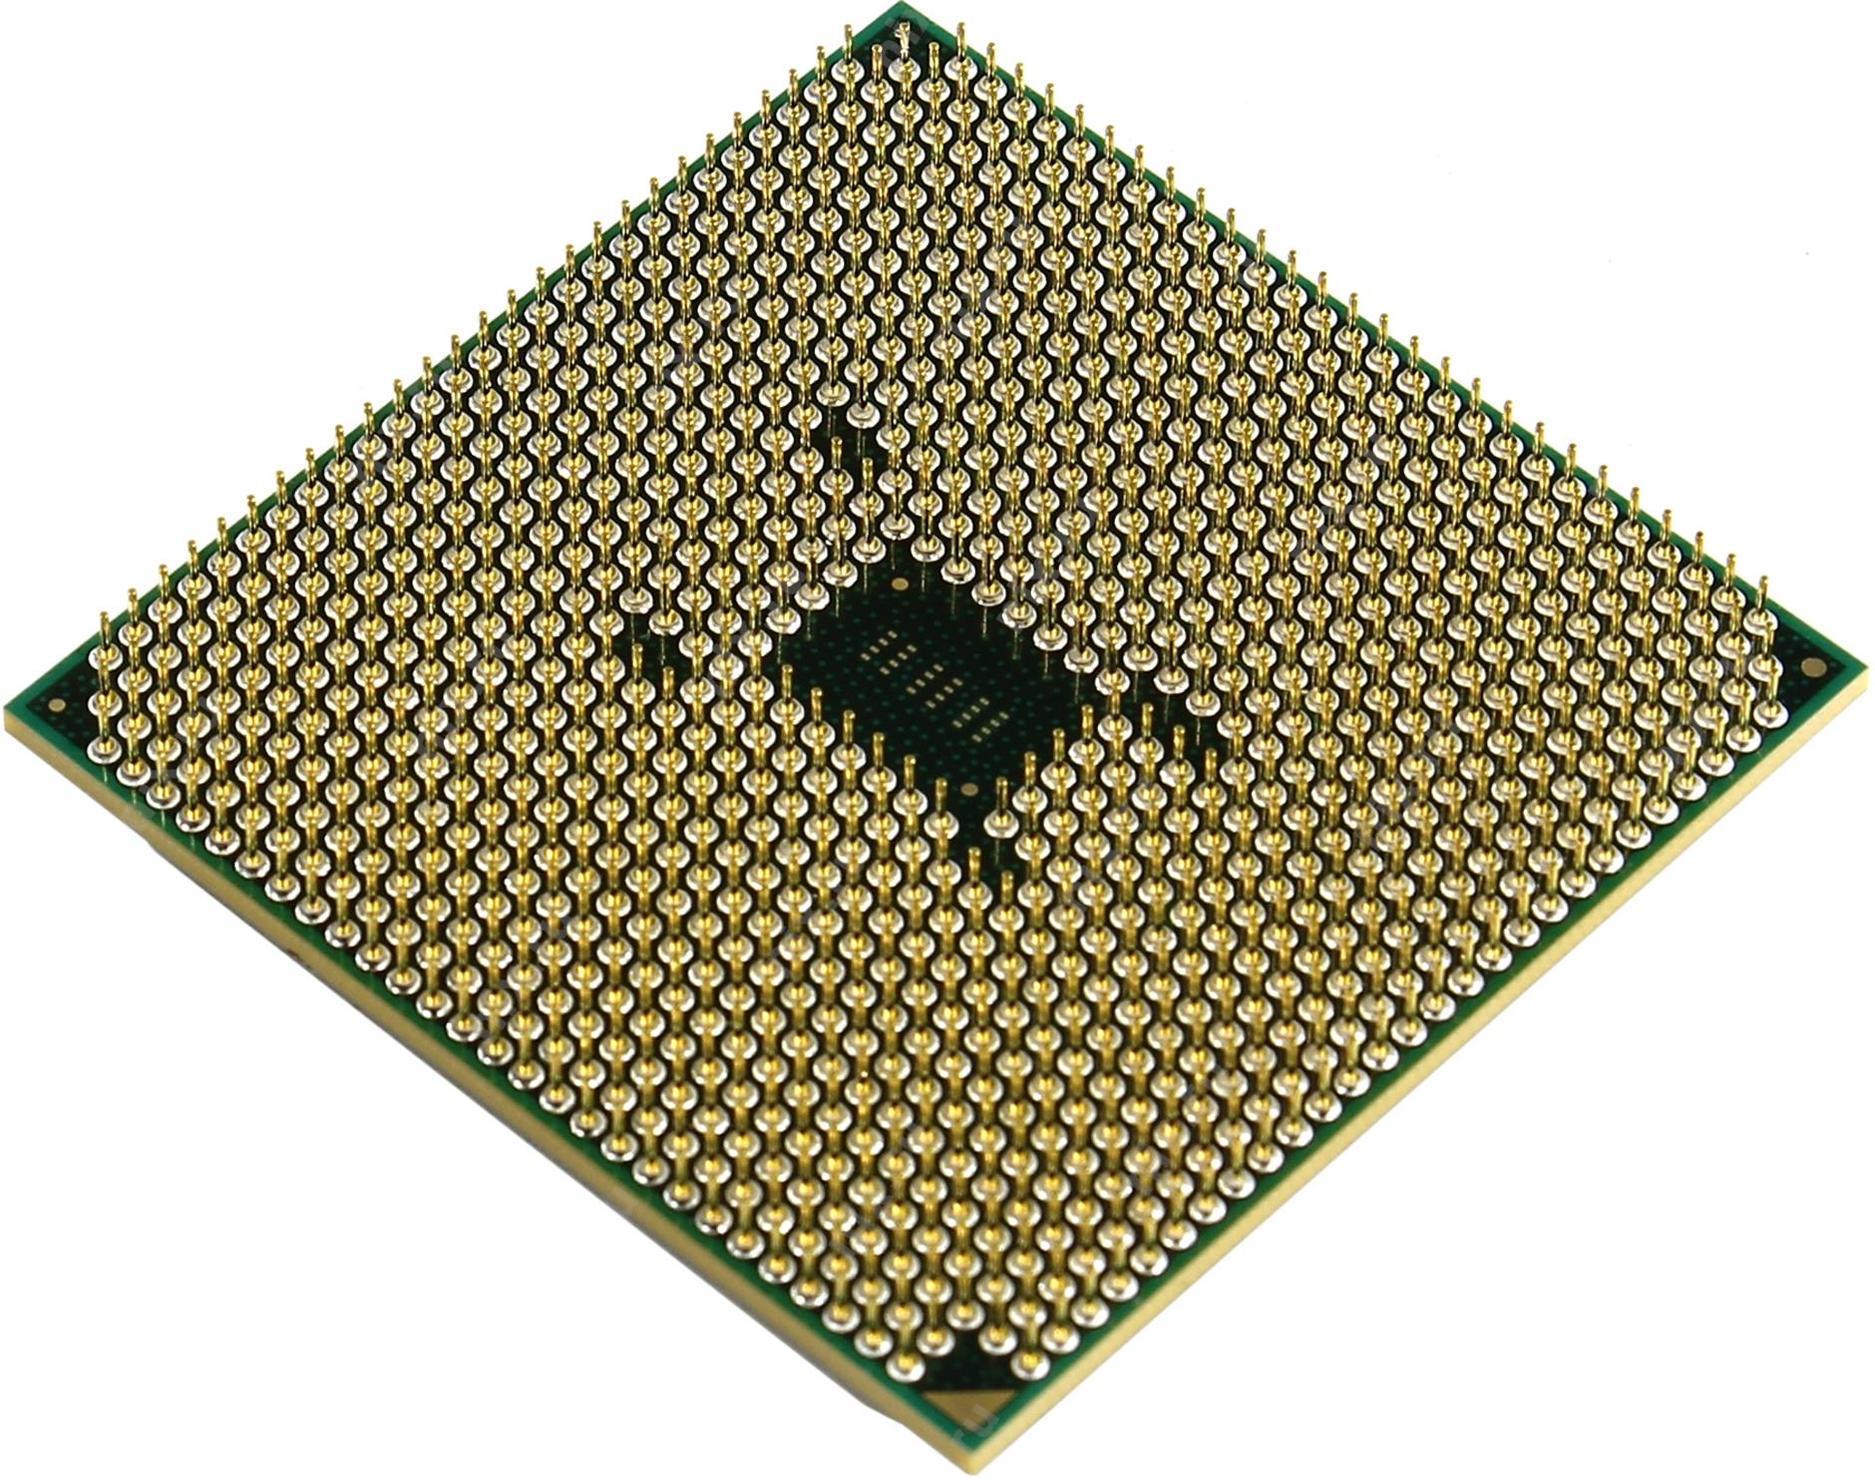 Athlon x4 650. Athlon II x4 631. AMD a8 6500. Процессор Socket fm1 AMD Athlon II x4 631 2.6 GHZ. Процессор AMD a8-6500 Richland.